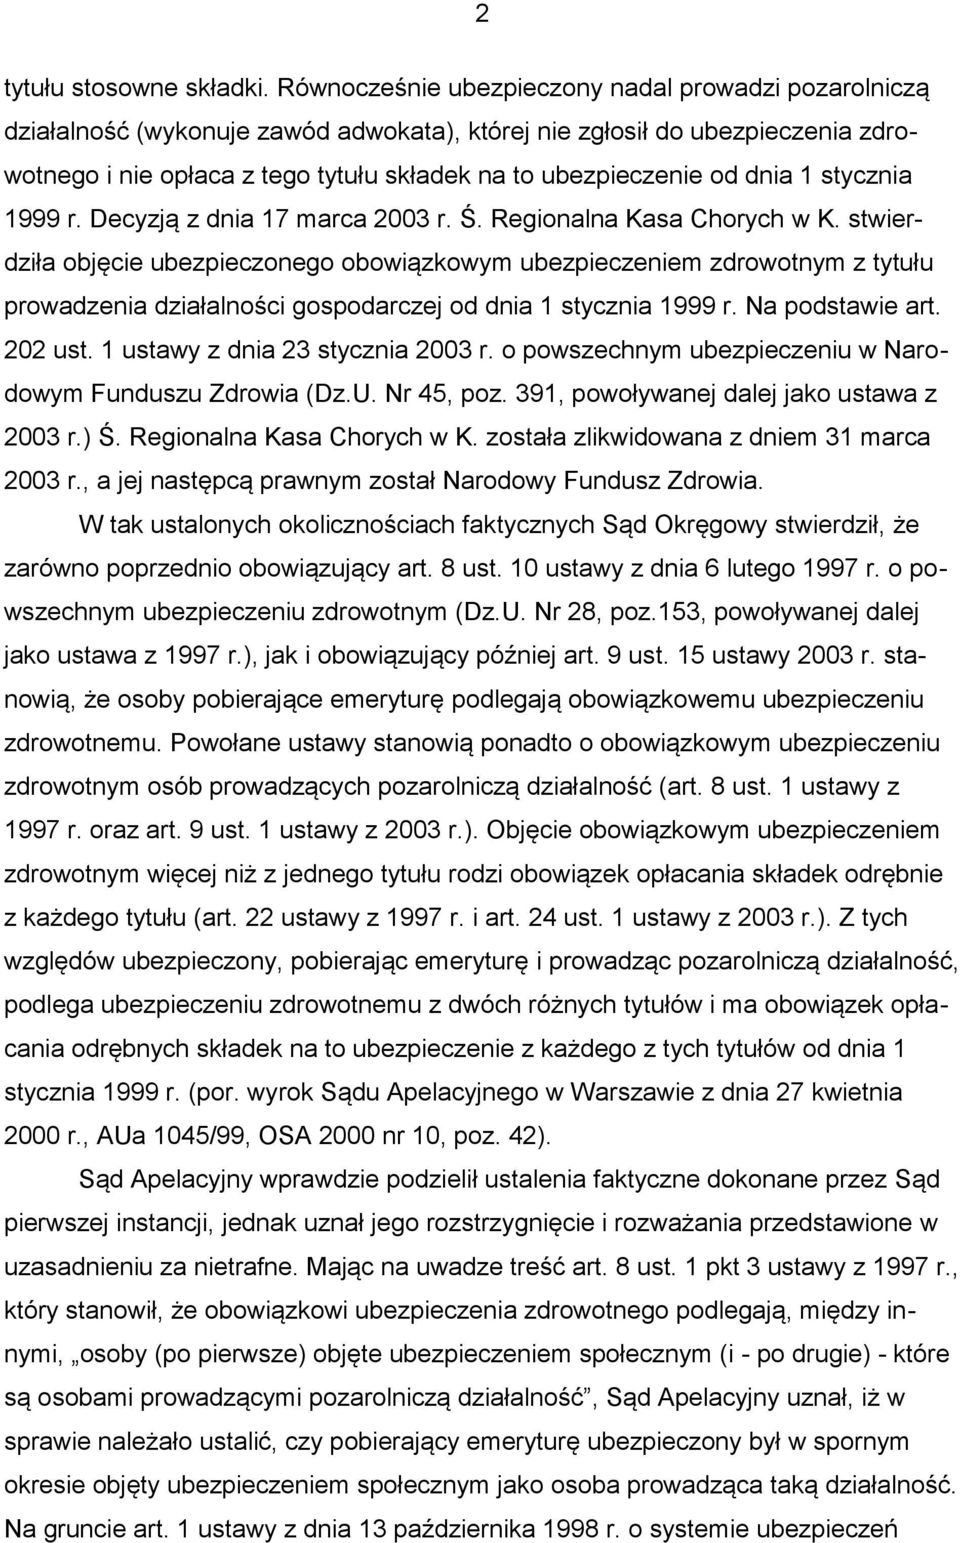 dnia 1 stycznia 1999 r. Decyzją z dnia 17 marca 2003 r. Ś. Regionalna Kasa Chorych w K.